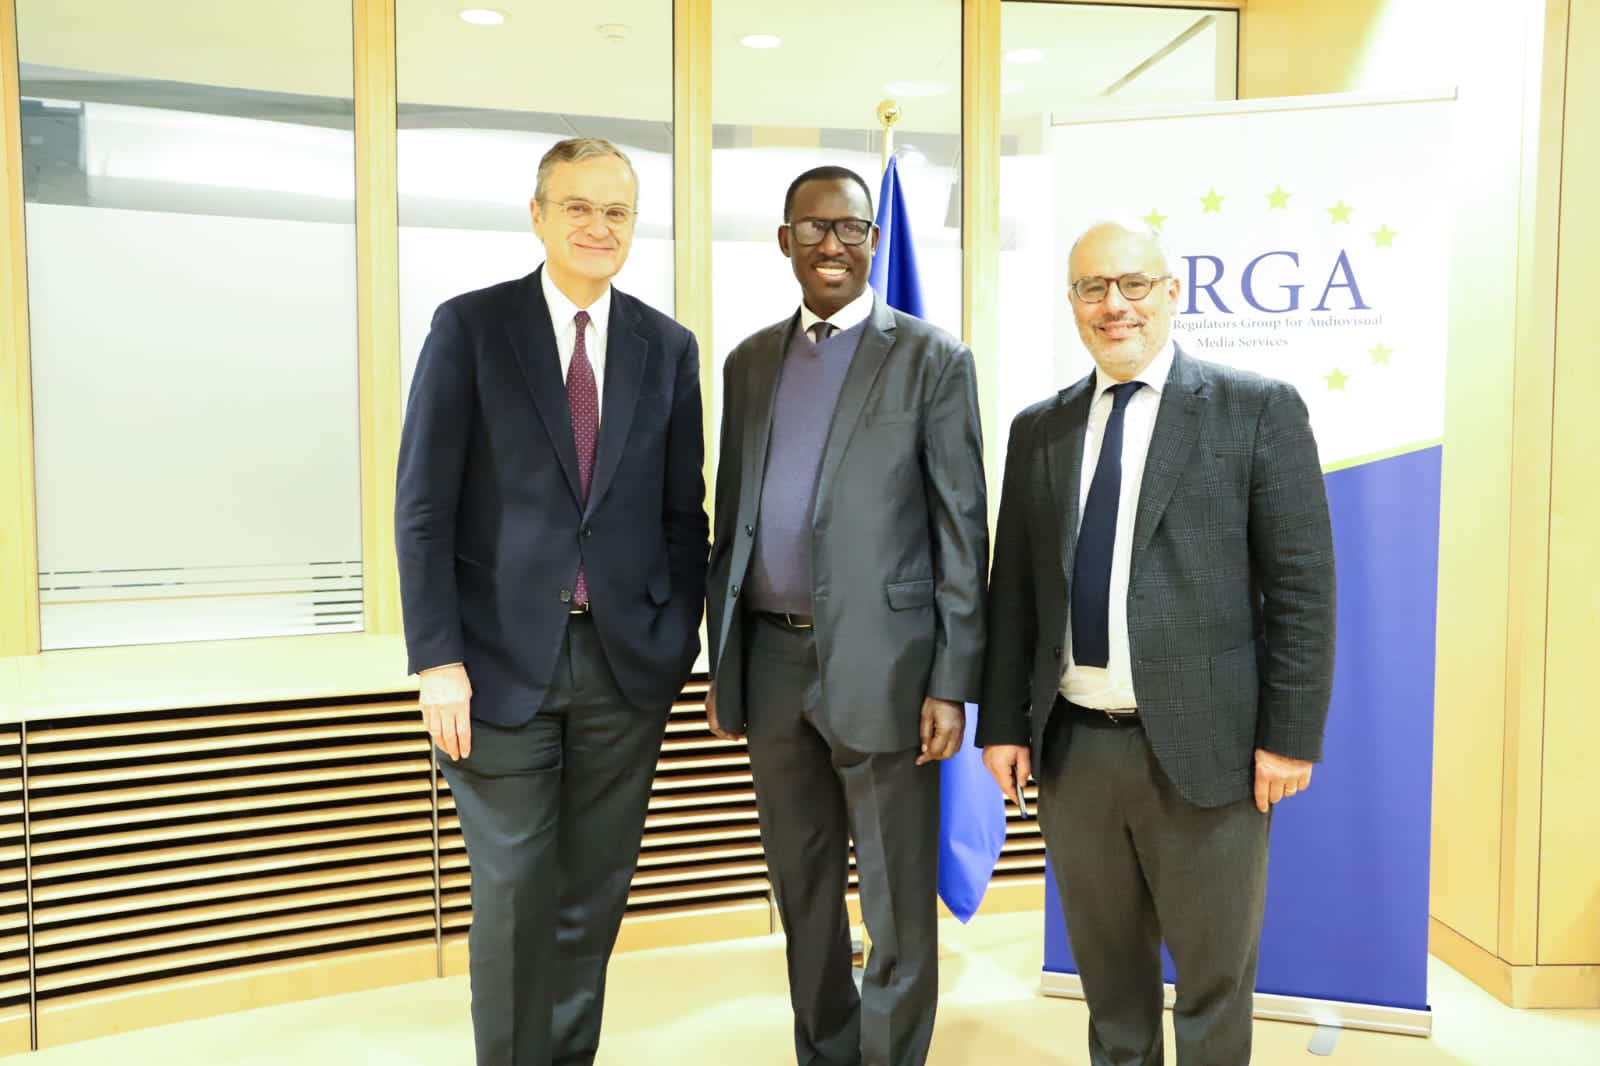 Babacar Diagne, hôte de l'ERGA à Bruxelles